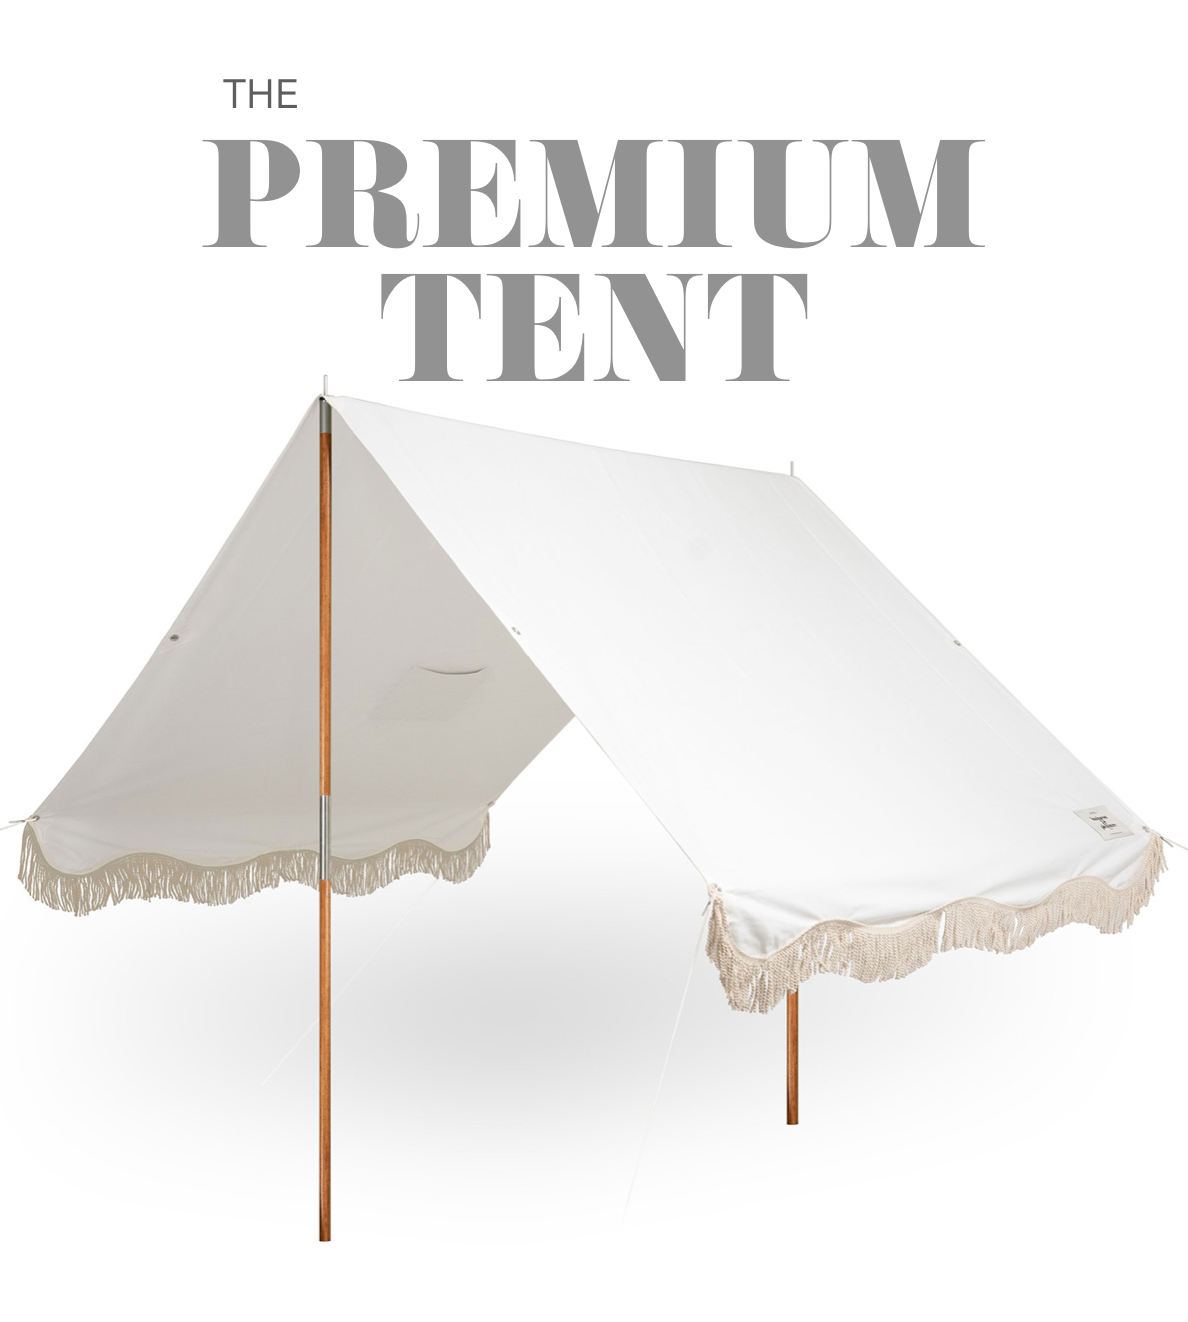 Video of premium tent set up